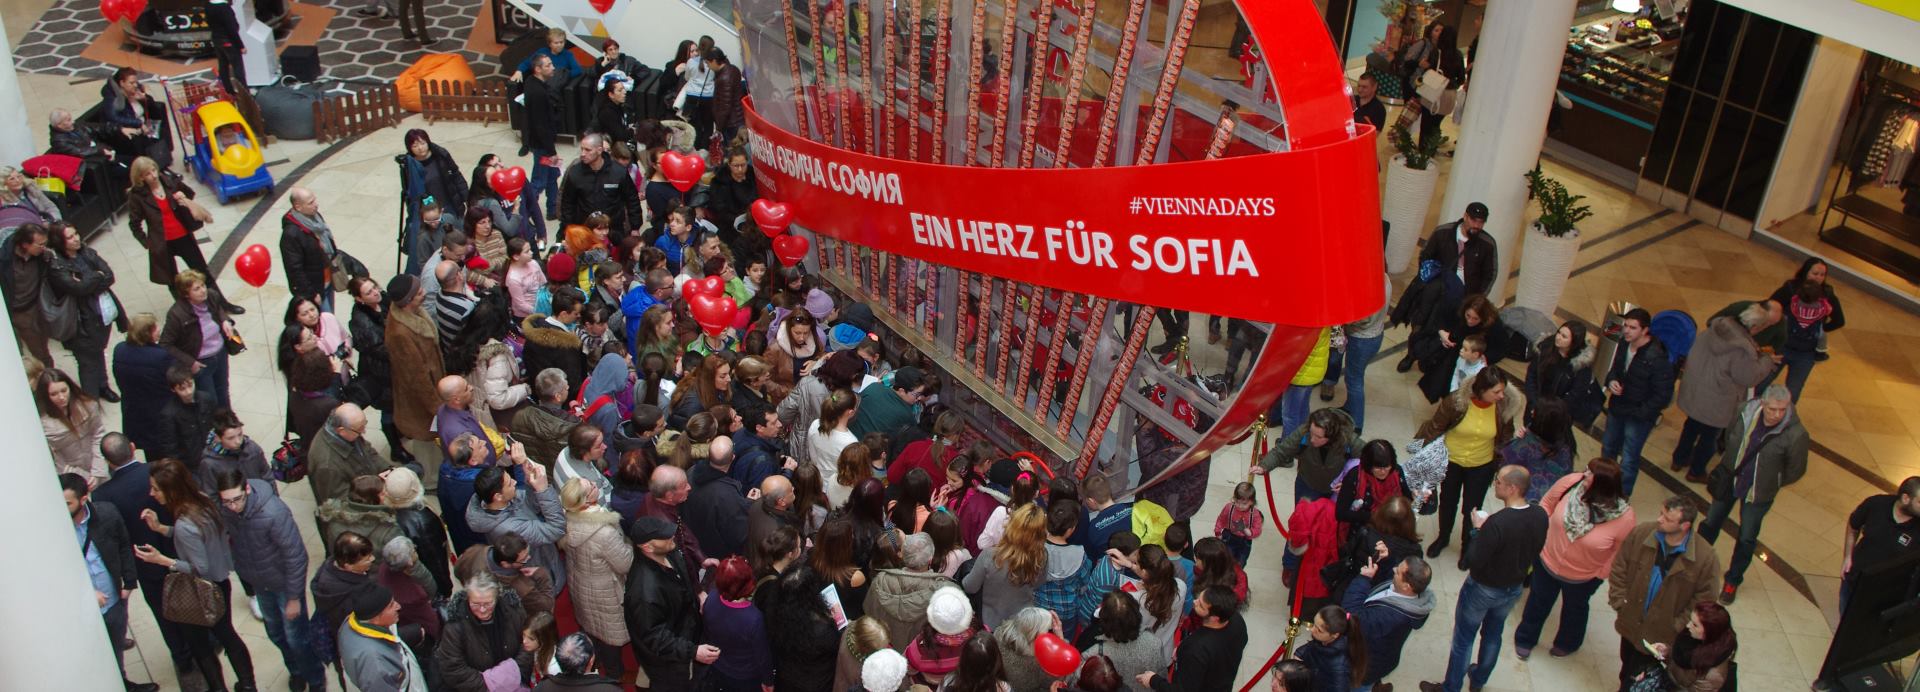 ‘Dani Beča’ se održavaju u Sofiji, krajem godine manifestacija dolazi u Grad Zagreb